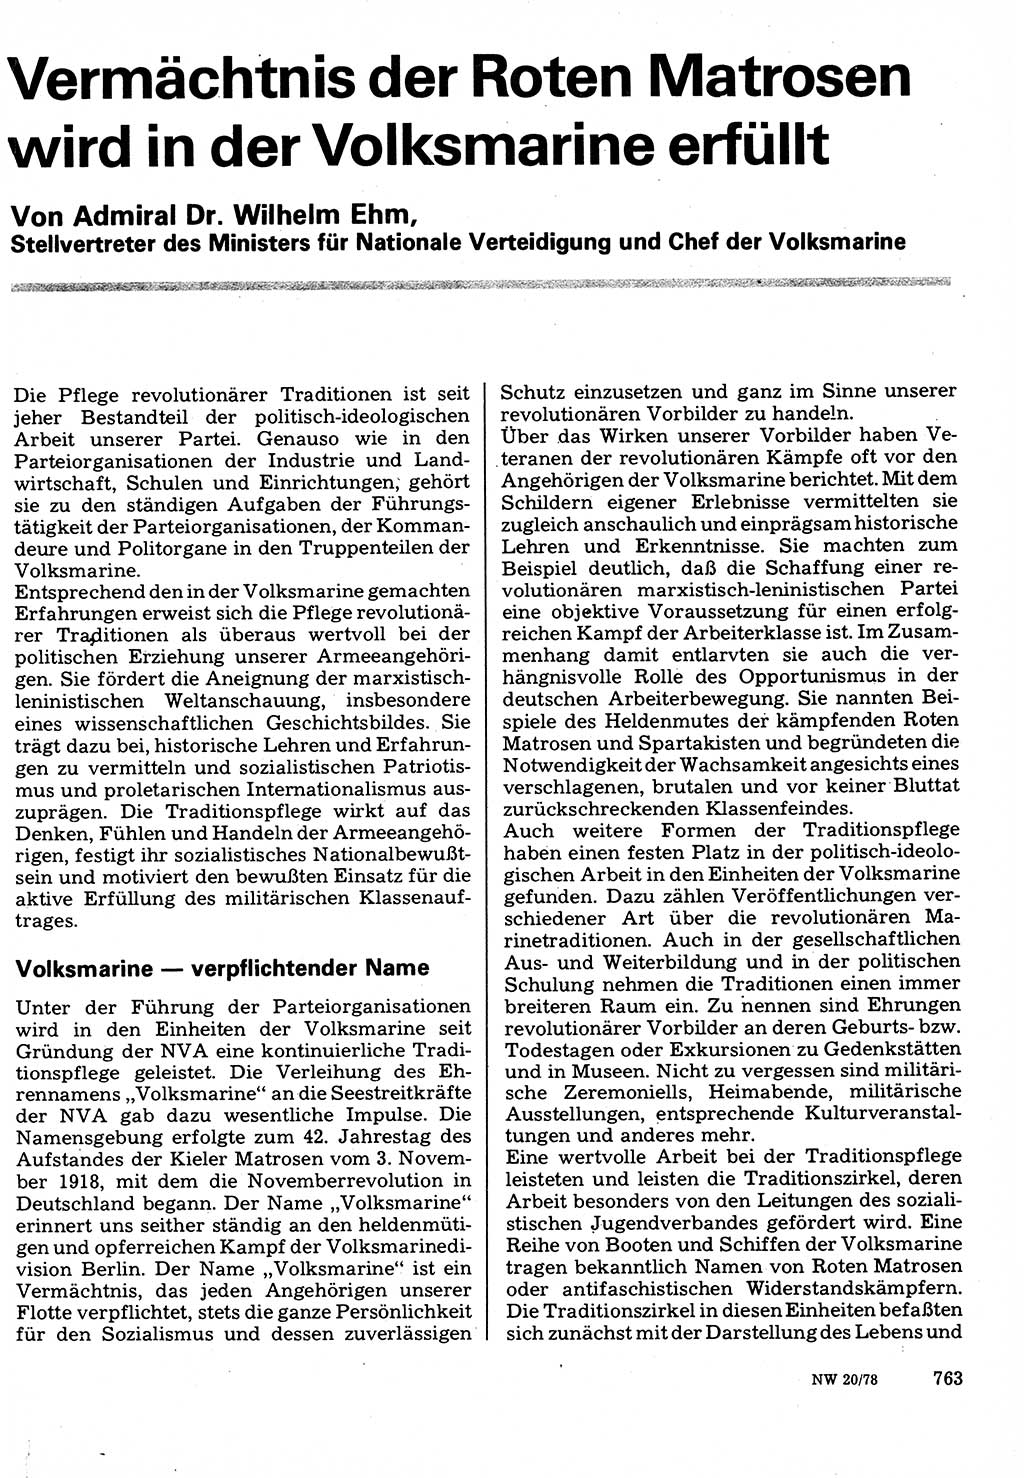 Neuer Weg (NW), Organ des Zentralkomitees (ZK) der SED (Sozialistische Einheitspartei Deutschlands) für Fragen des Parteilebens, 33. Jahrgang [Deutsche Demokratische Republik (DDR)] 1978, Seite 763 (NW ZK SED DDR 1978, S. 763)